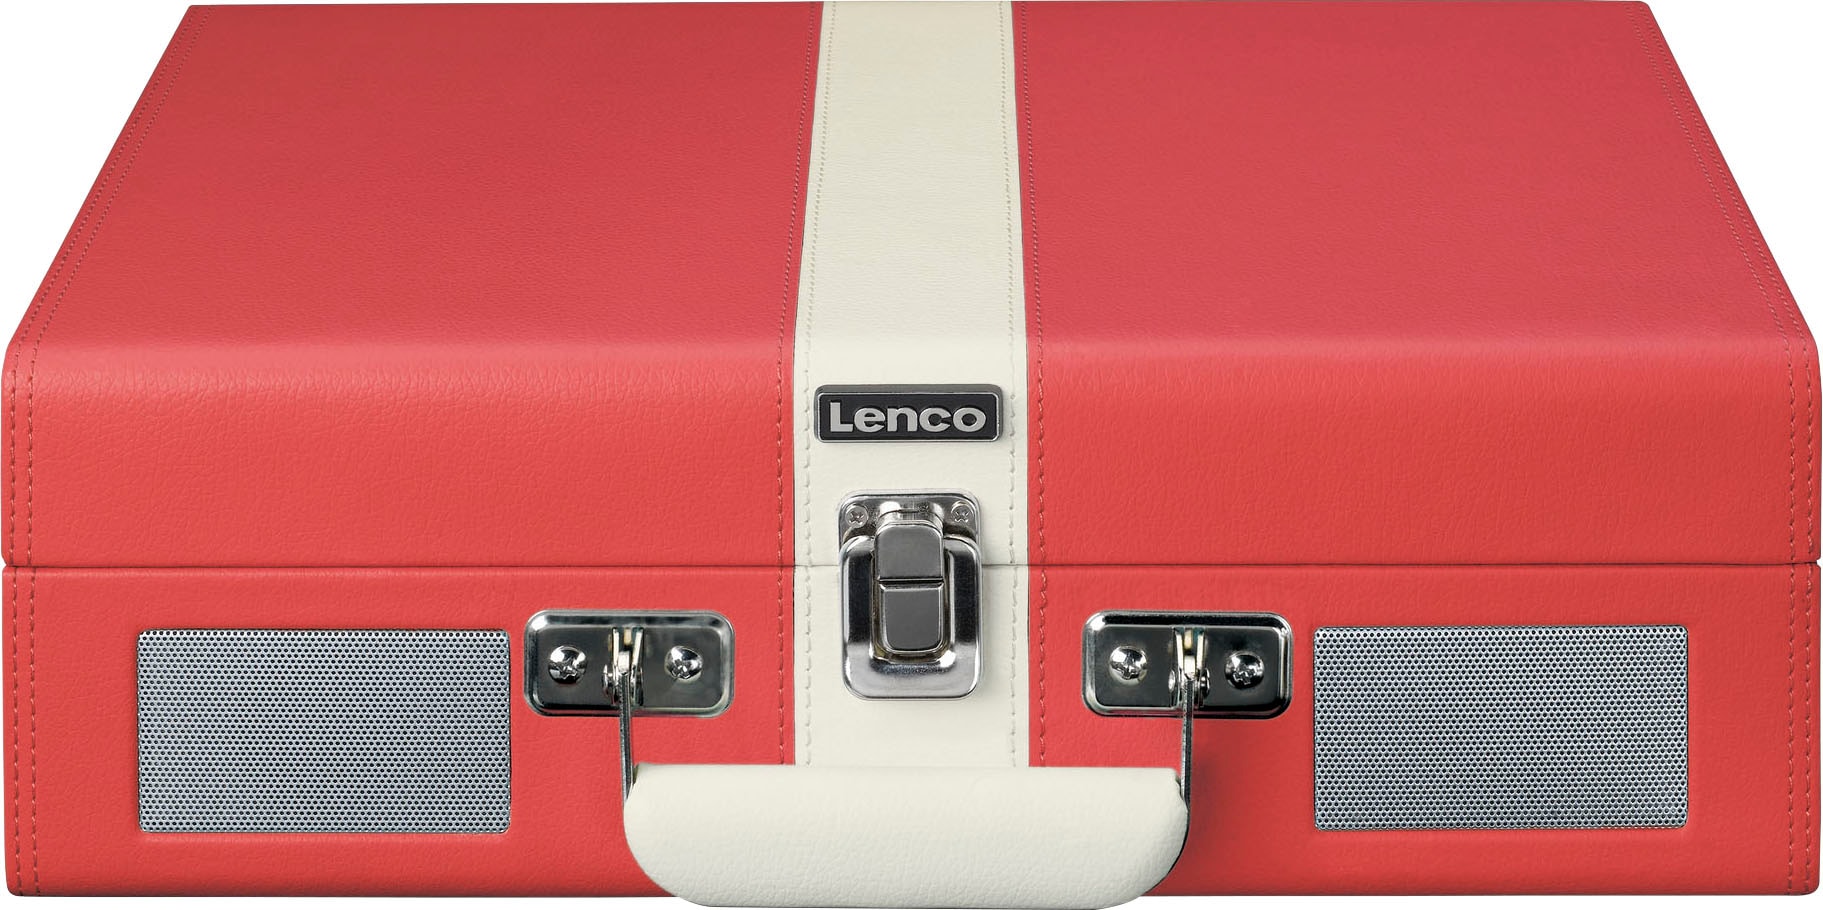 jetzt und Lenco eingebauten bei »Koffer-Plattenspieler mit Plattenspieler BT OTTO Lsp.«